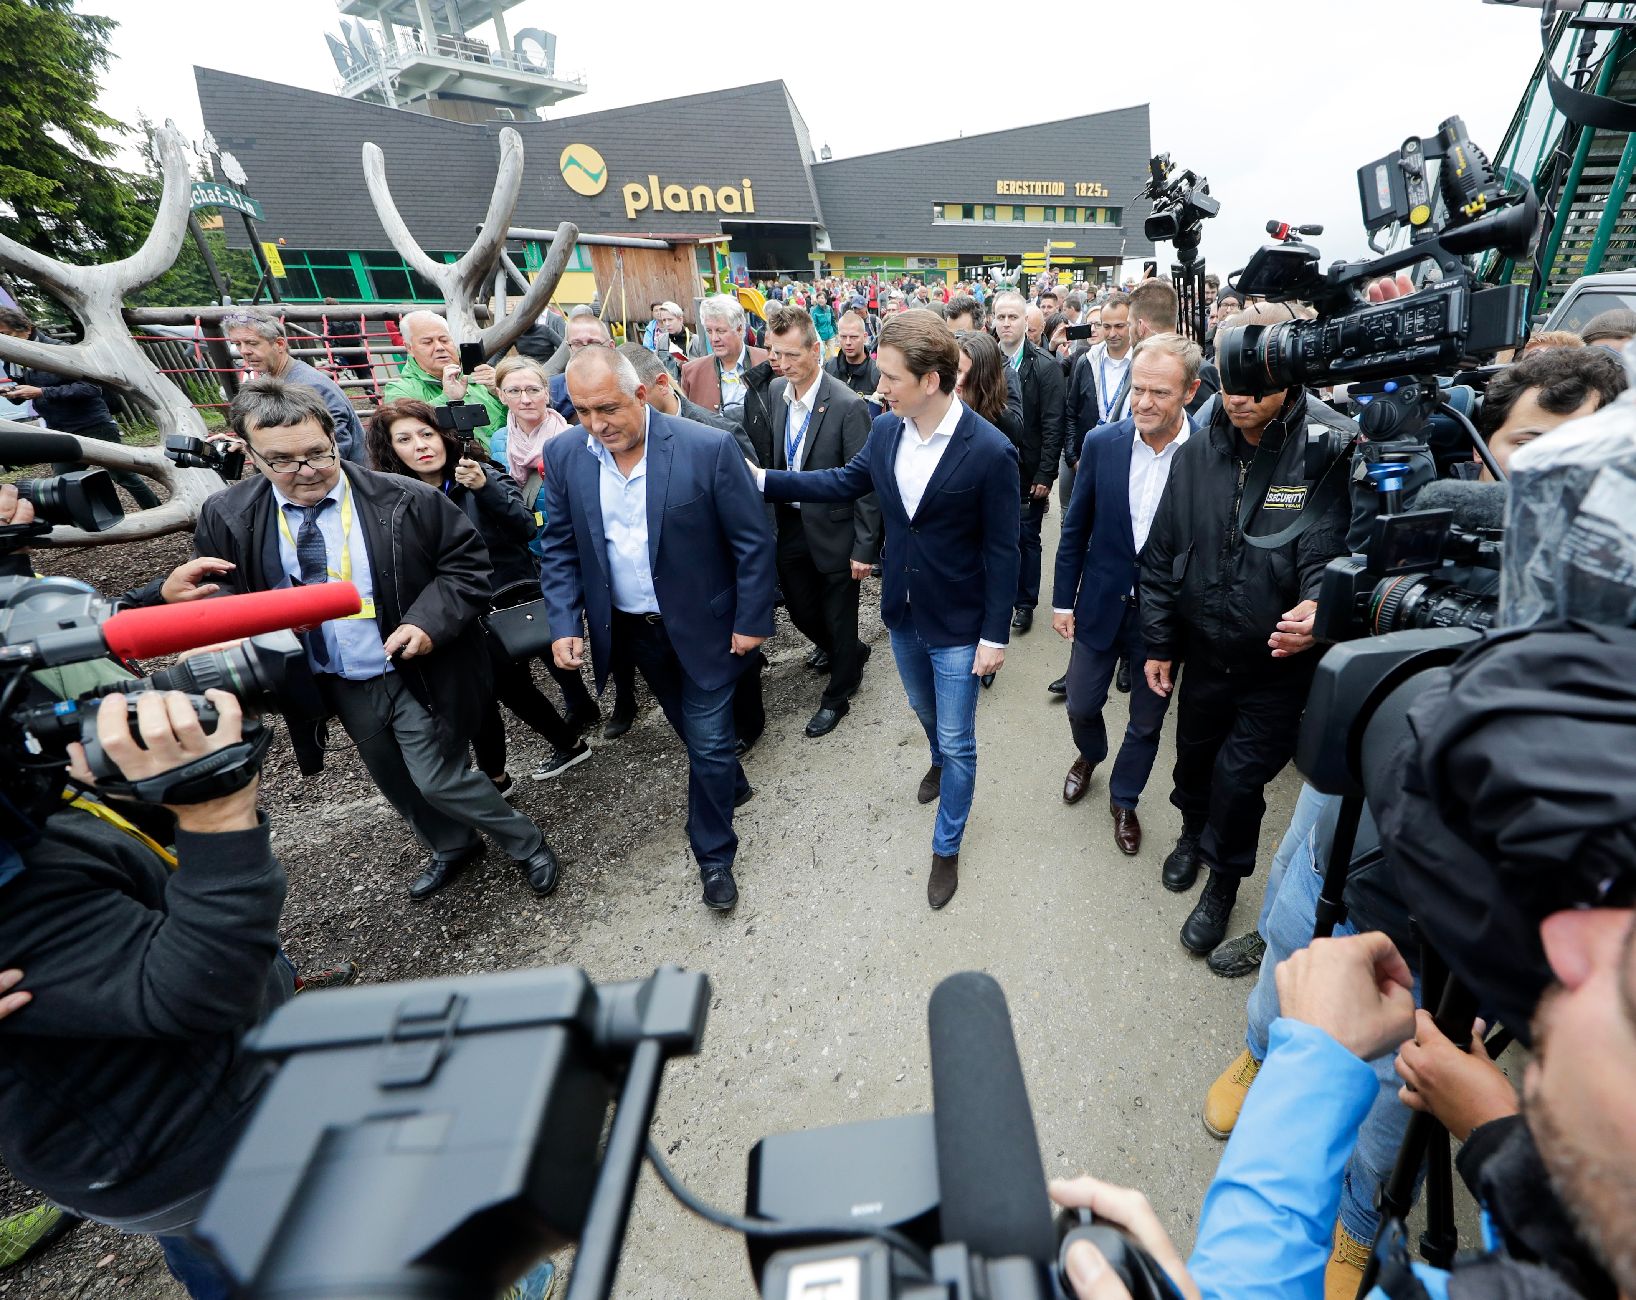 Arrivée du chancelier fédéral Sebastian Kurz, du premier ministre Boïko Borissov et du président du Conseil européen Donald Tusk à la montagne Planai